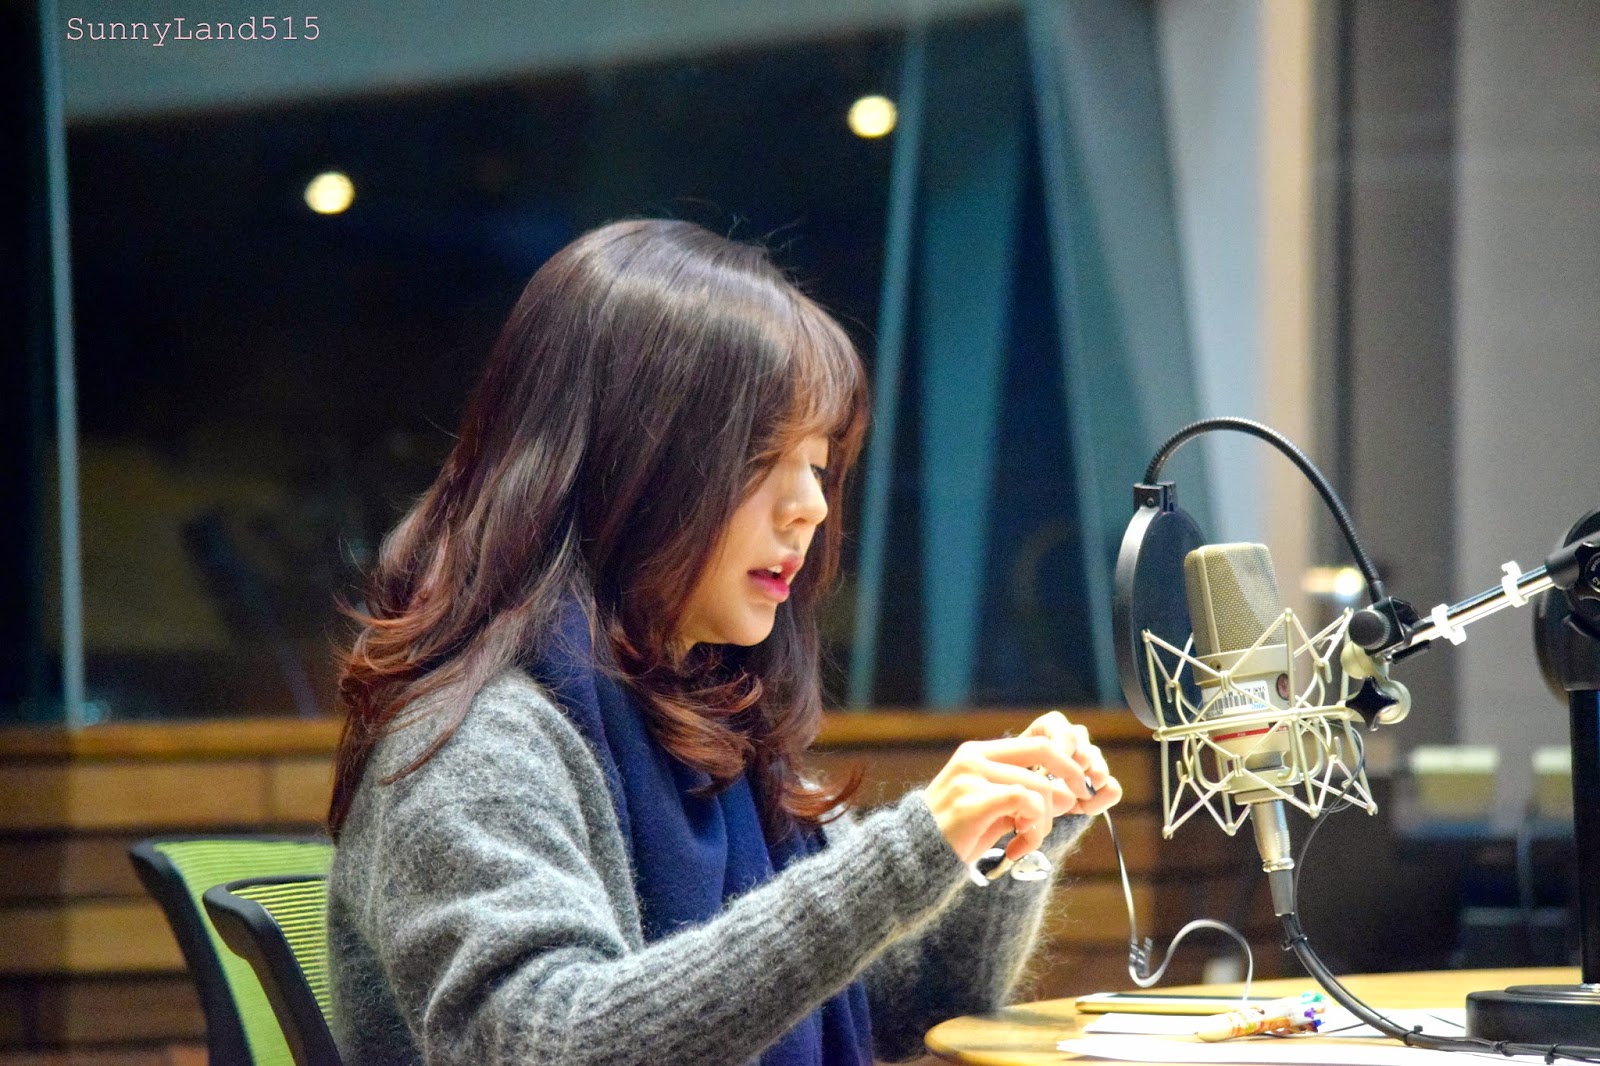 [OTHER][06-02-2015]Hình ảnh mới nhất từ DJ Sunny tại Radio MBC FM4U - "FM Date" - Page 10 DSC_0232_Fotor